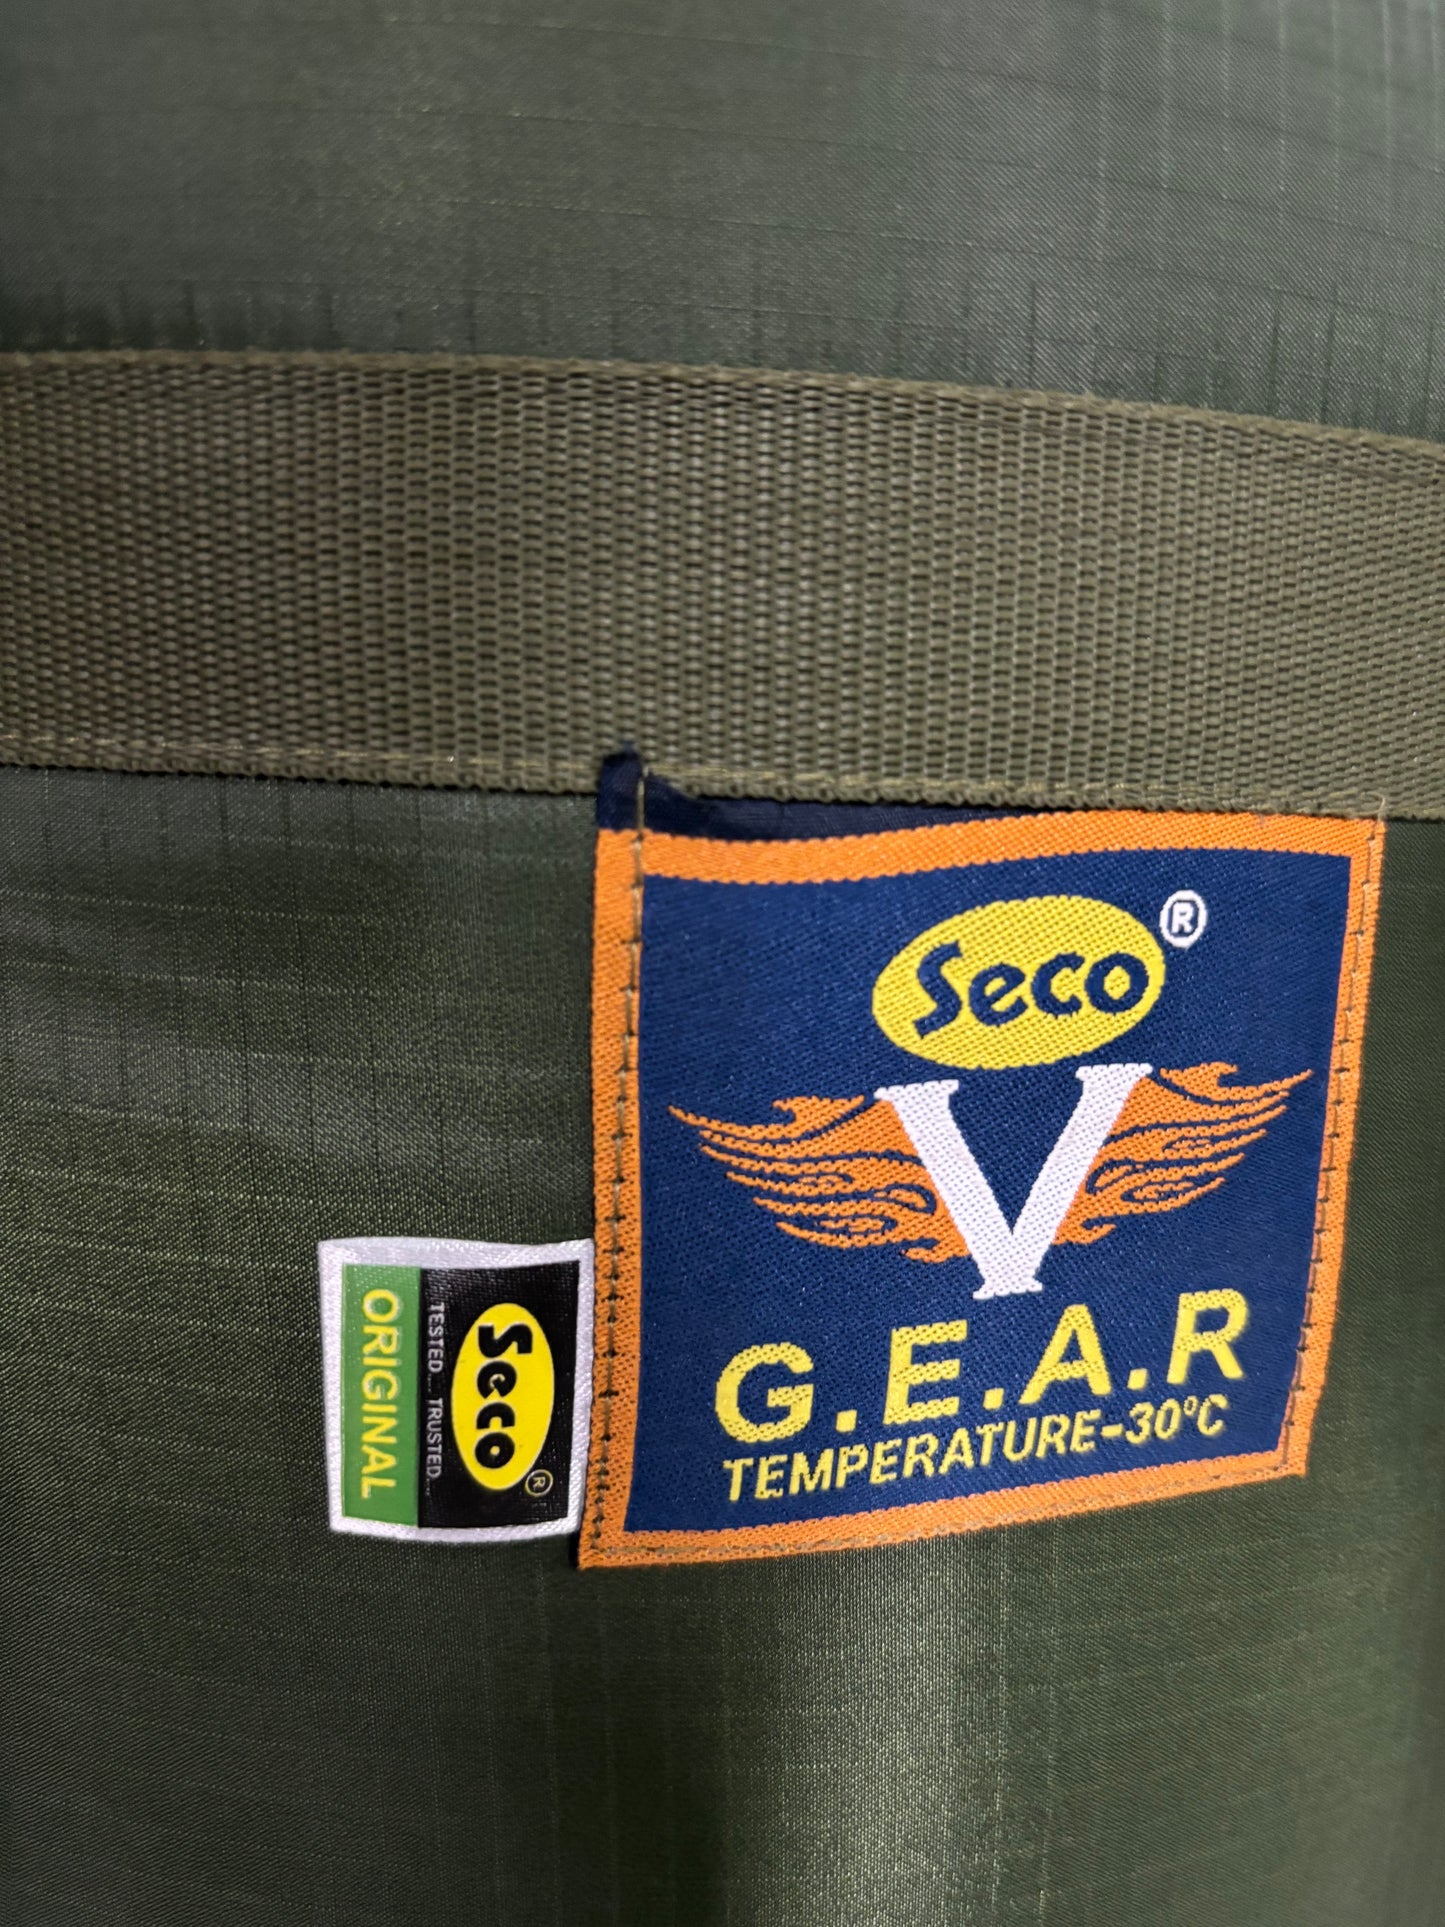 Seco (V Gear) -30